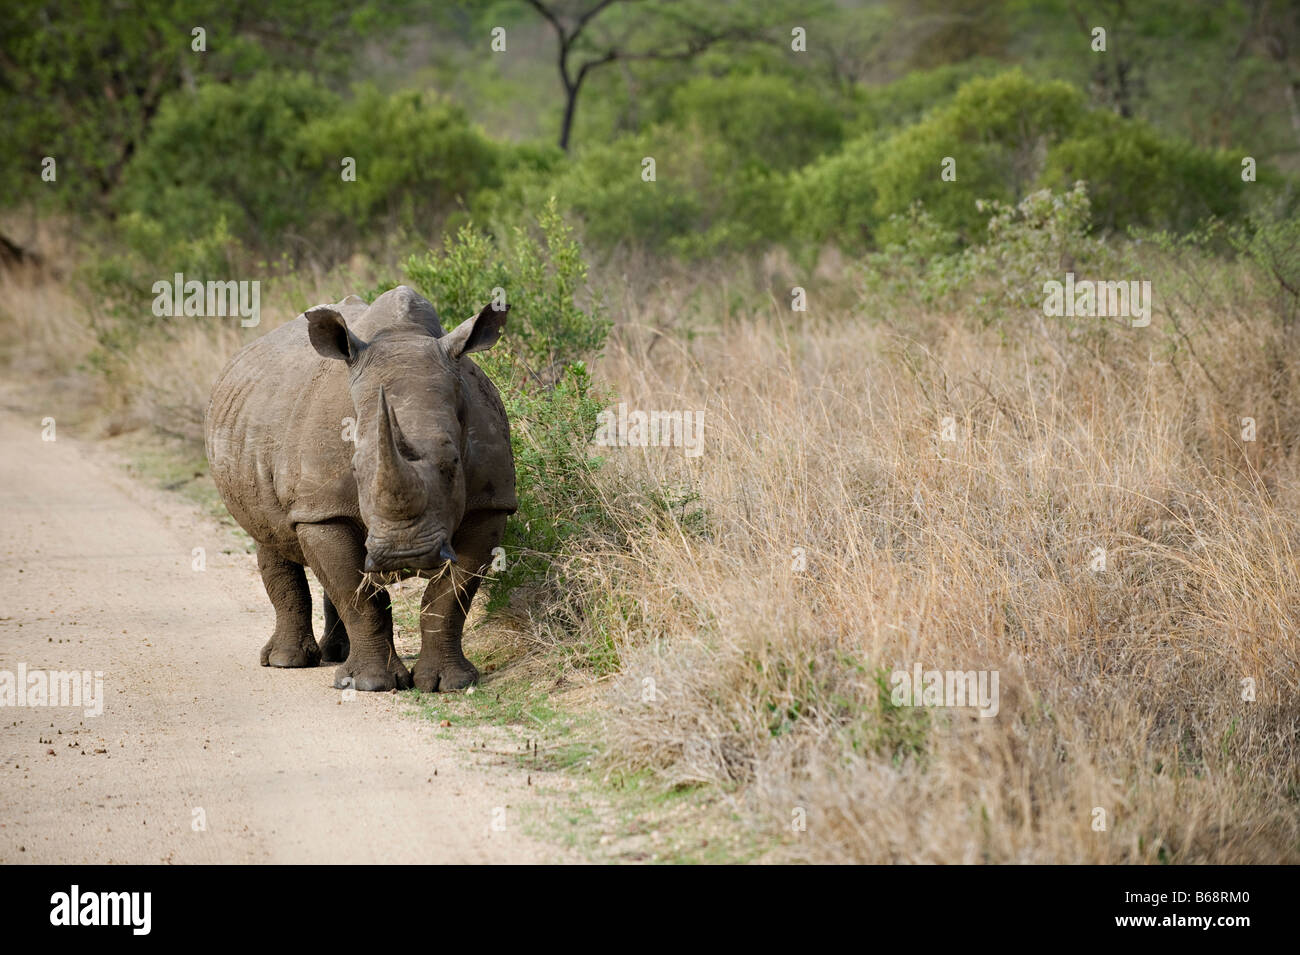 rhino on safari Stock Photo